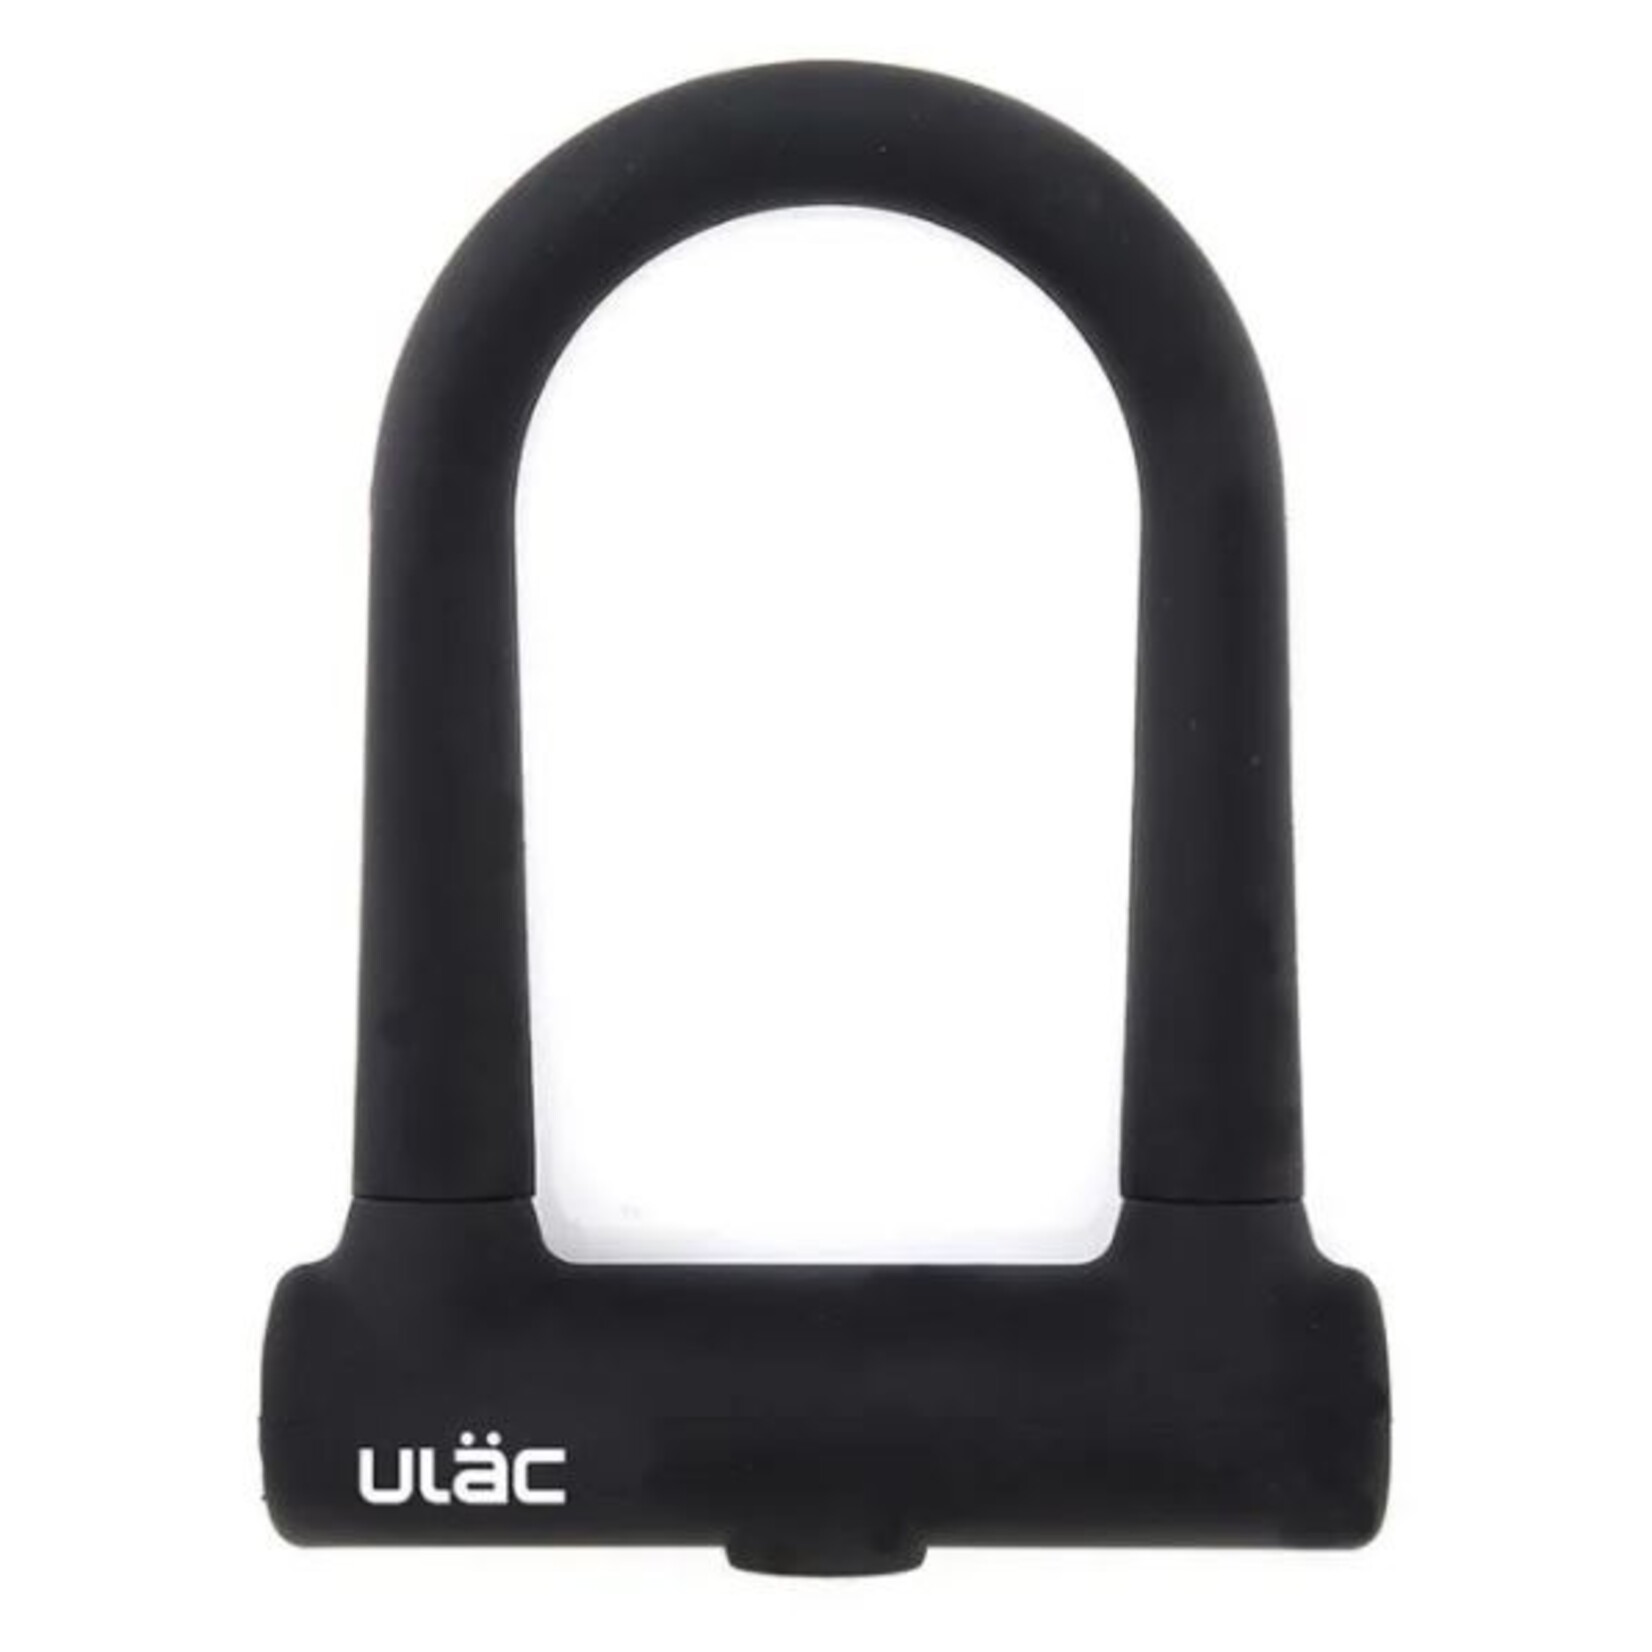 ULAC ULAC Brooklyn Silicon Alloy U Shackle Lock - Black -Dimensions 76mm x 128mm